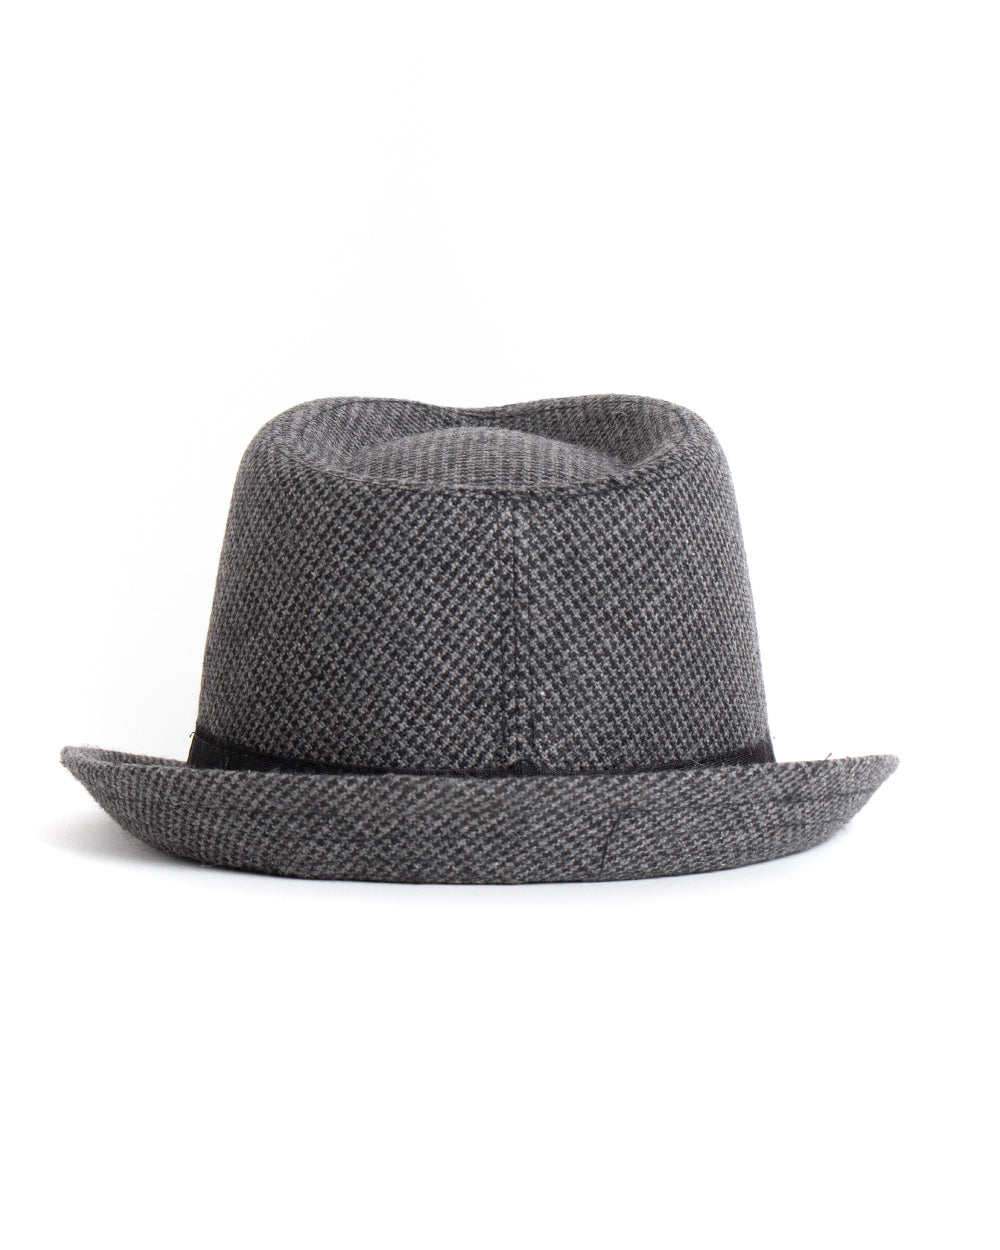 Cappello Uomo Hat Grigio Rigido Classico Rigato Microfantasia GIOSAL-CAP1003A